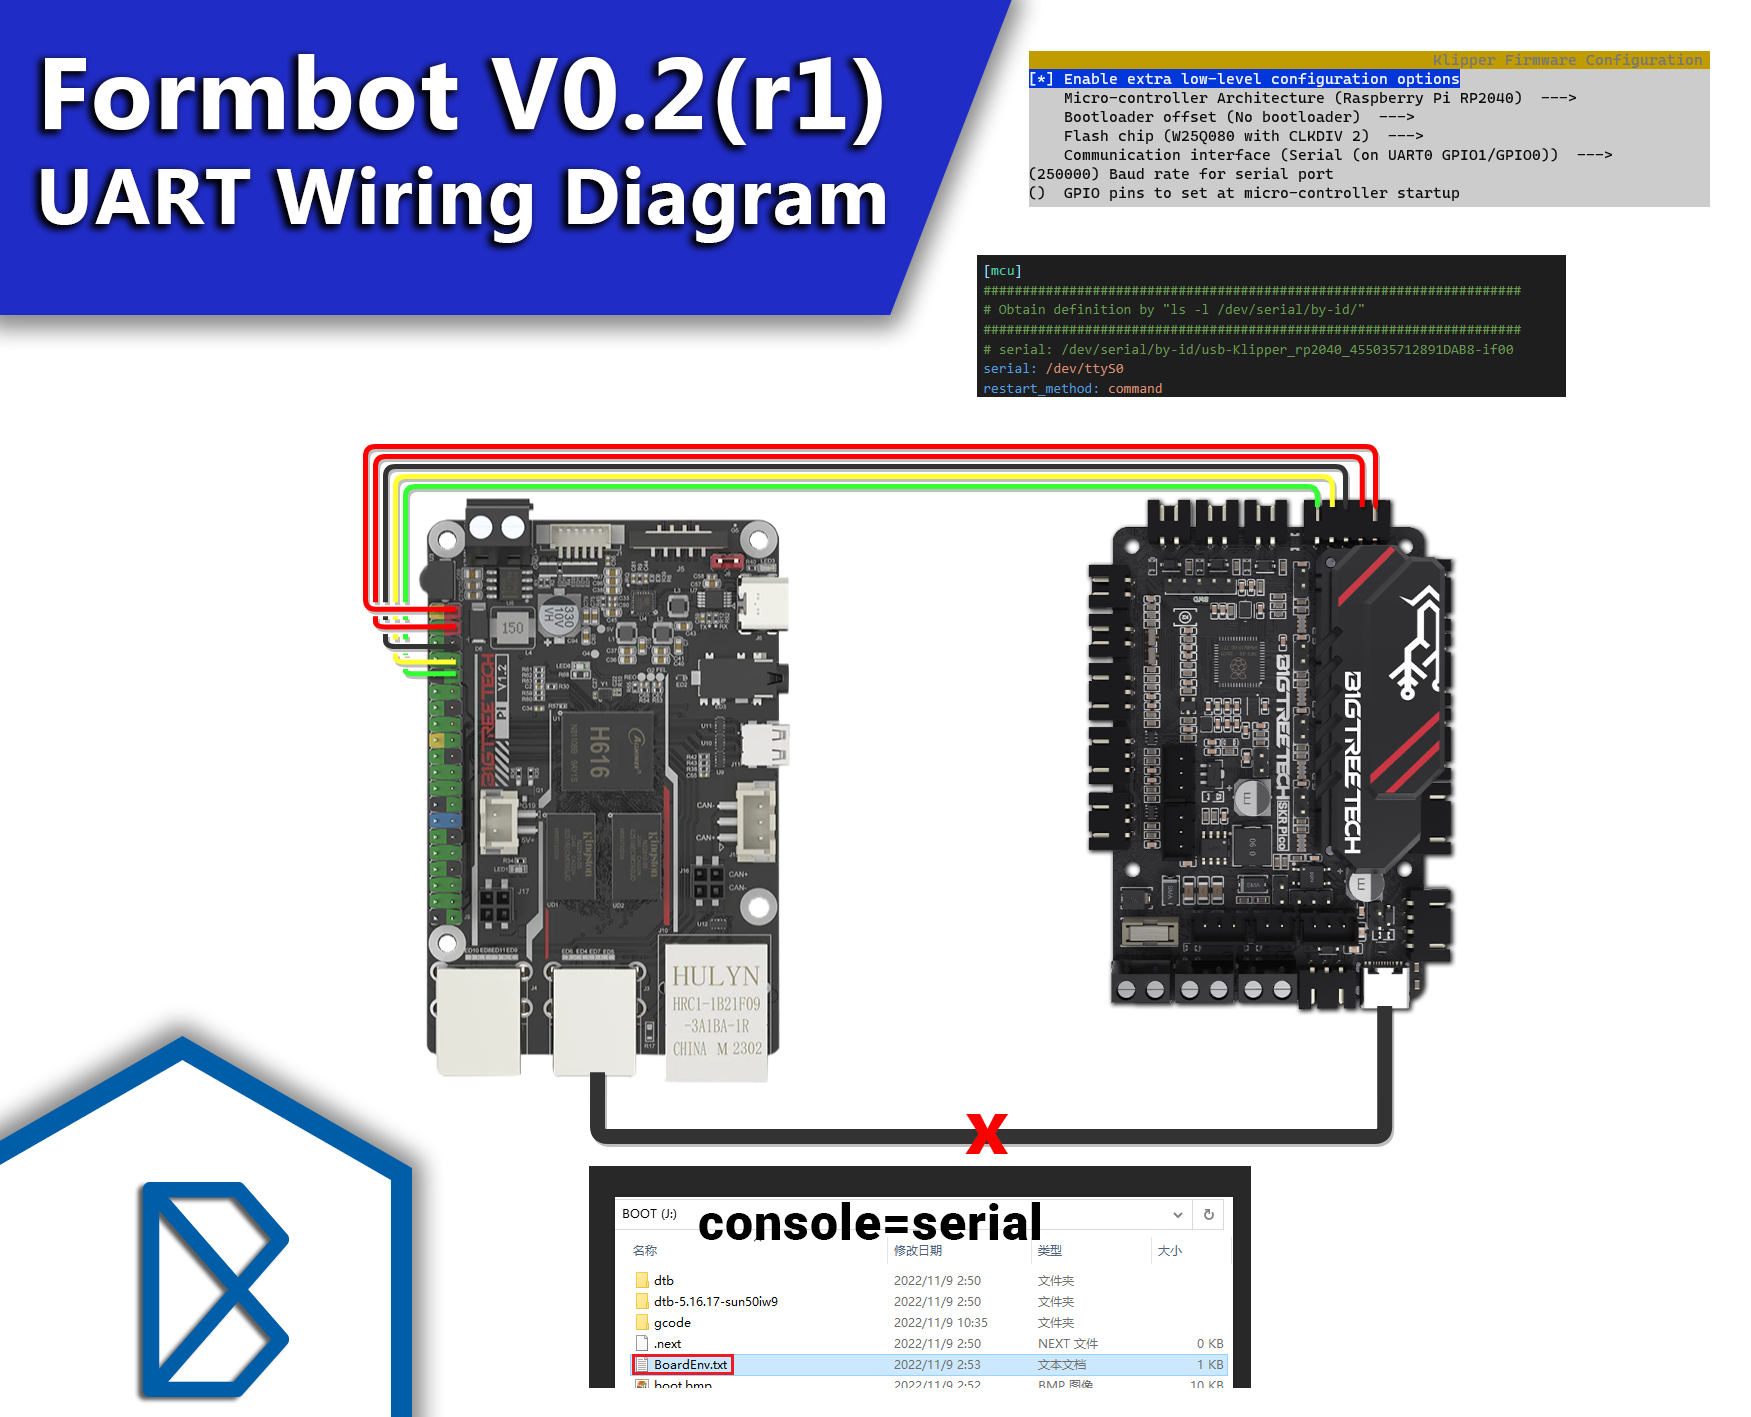 formbot-voron-v0.2r1-kit-uart-wiring-diagram.png